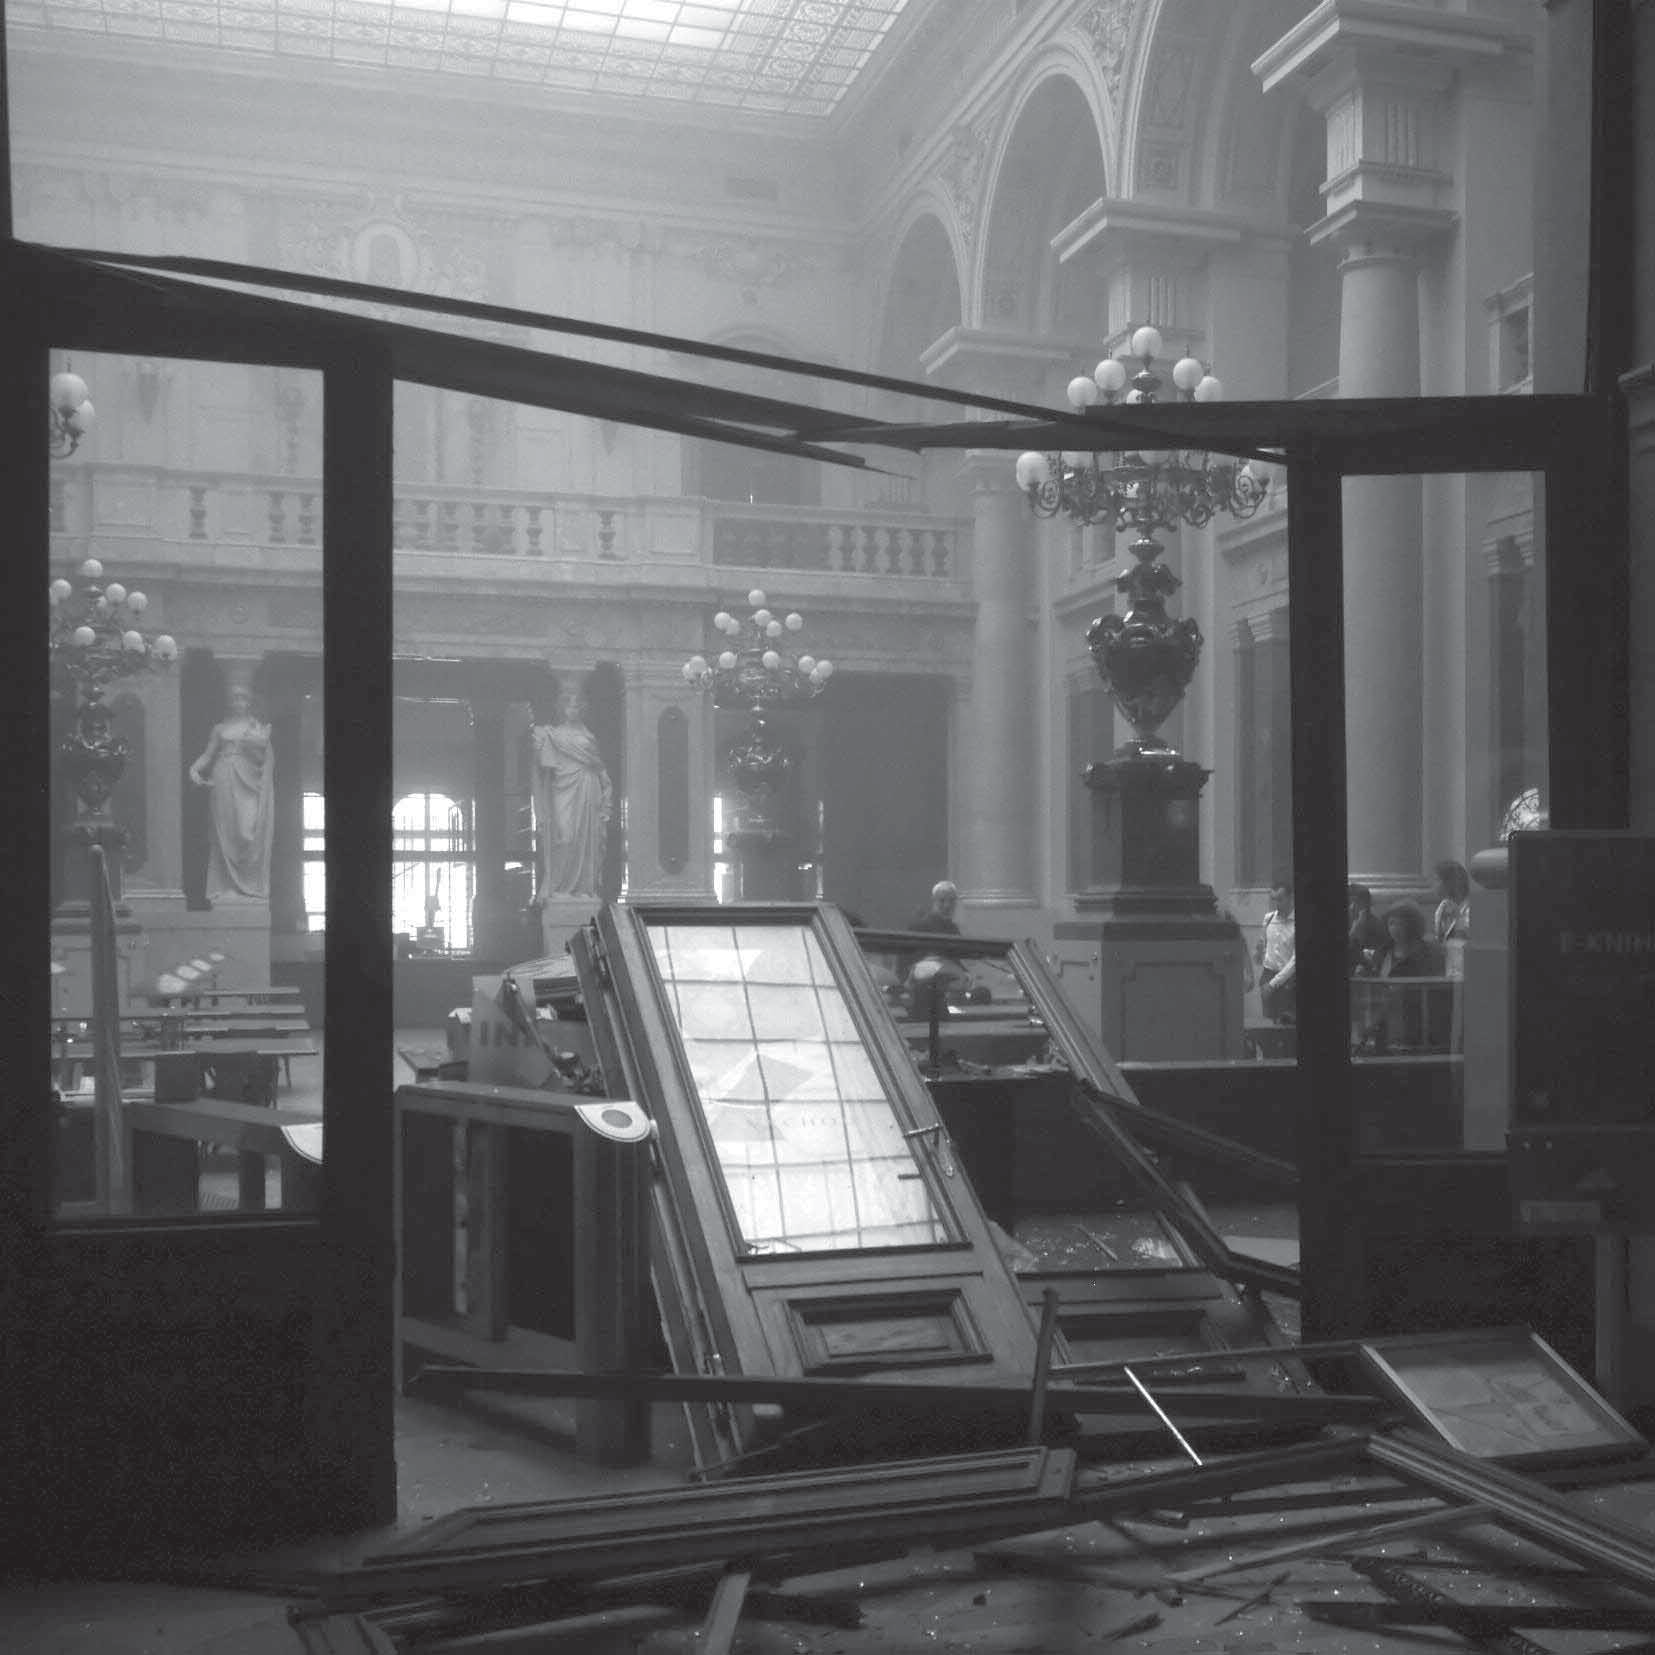 Studovna knihovny, jejíž okna směřují jak do Krocínovy, tak i do Divadelní ulice, byla jedním z nejvíce poškozených prostorů v budově.